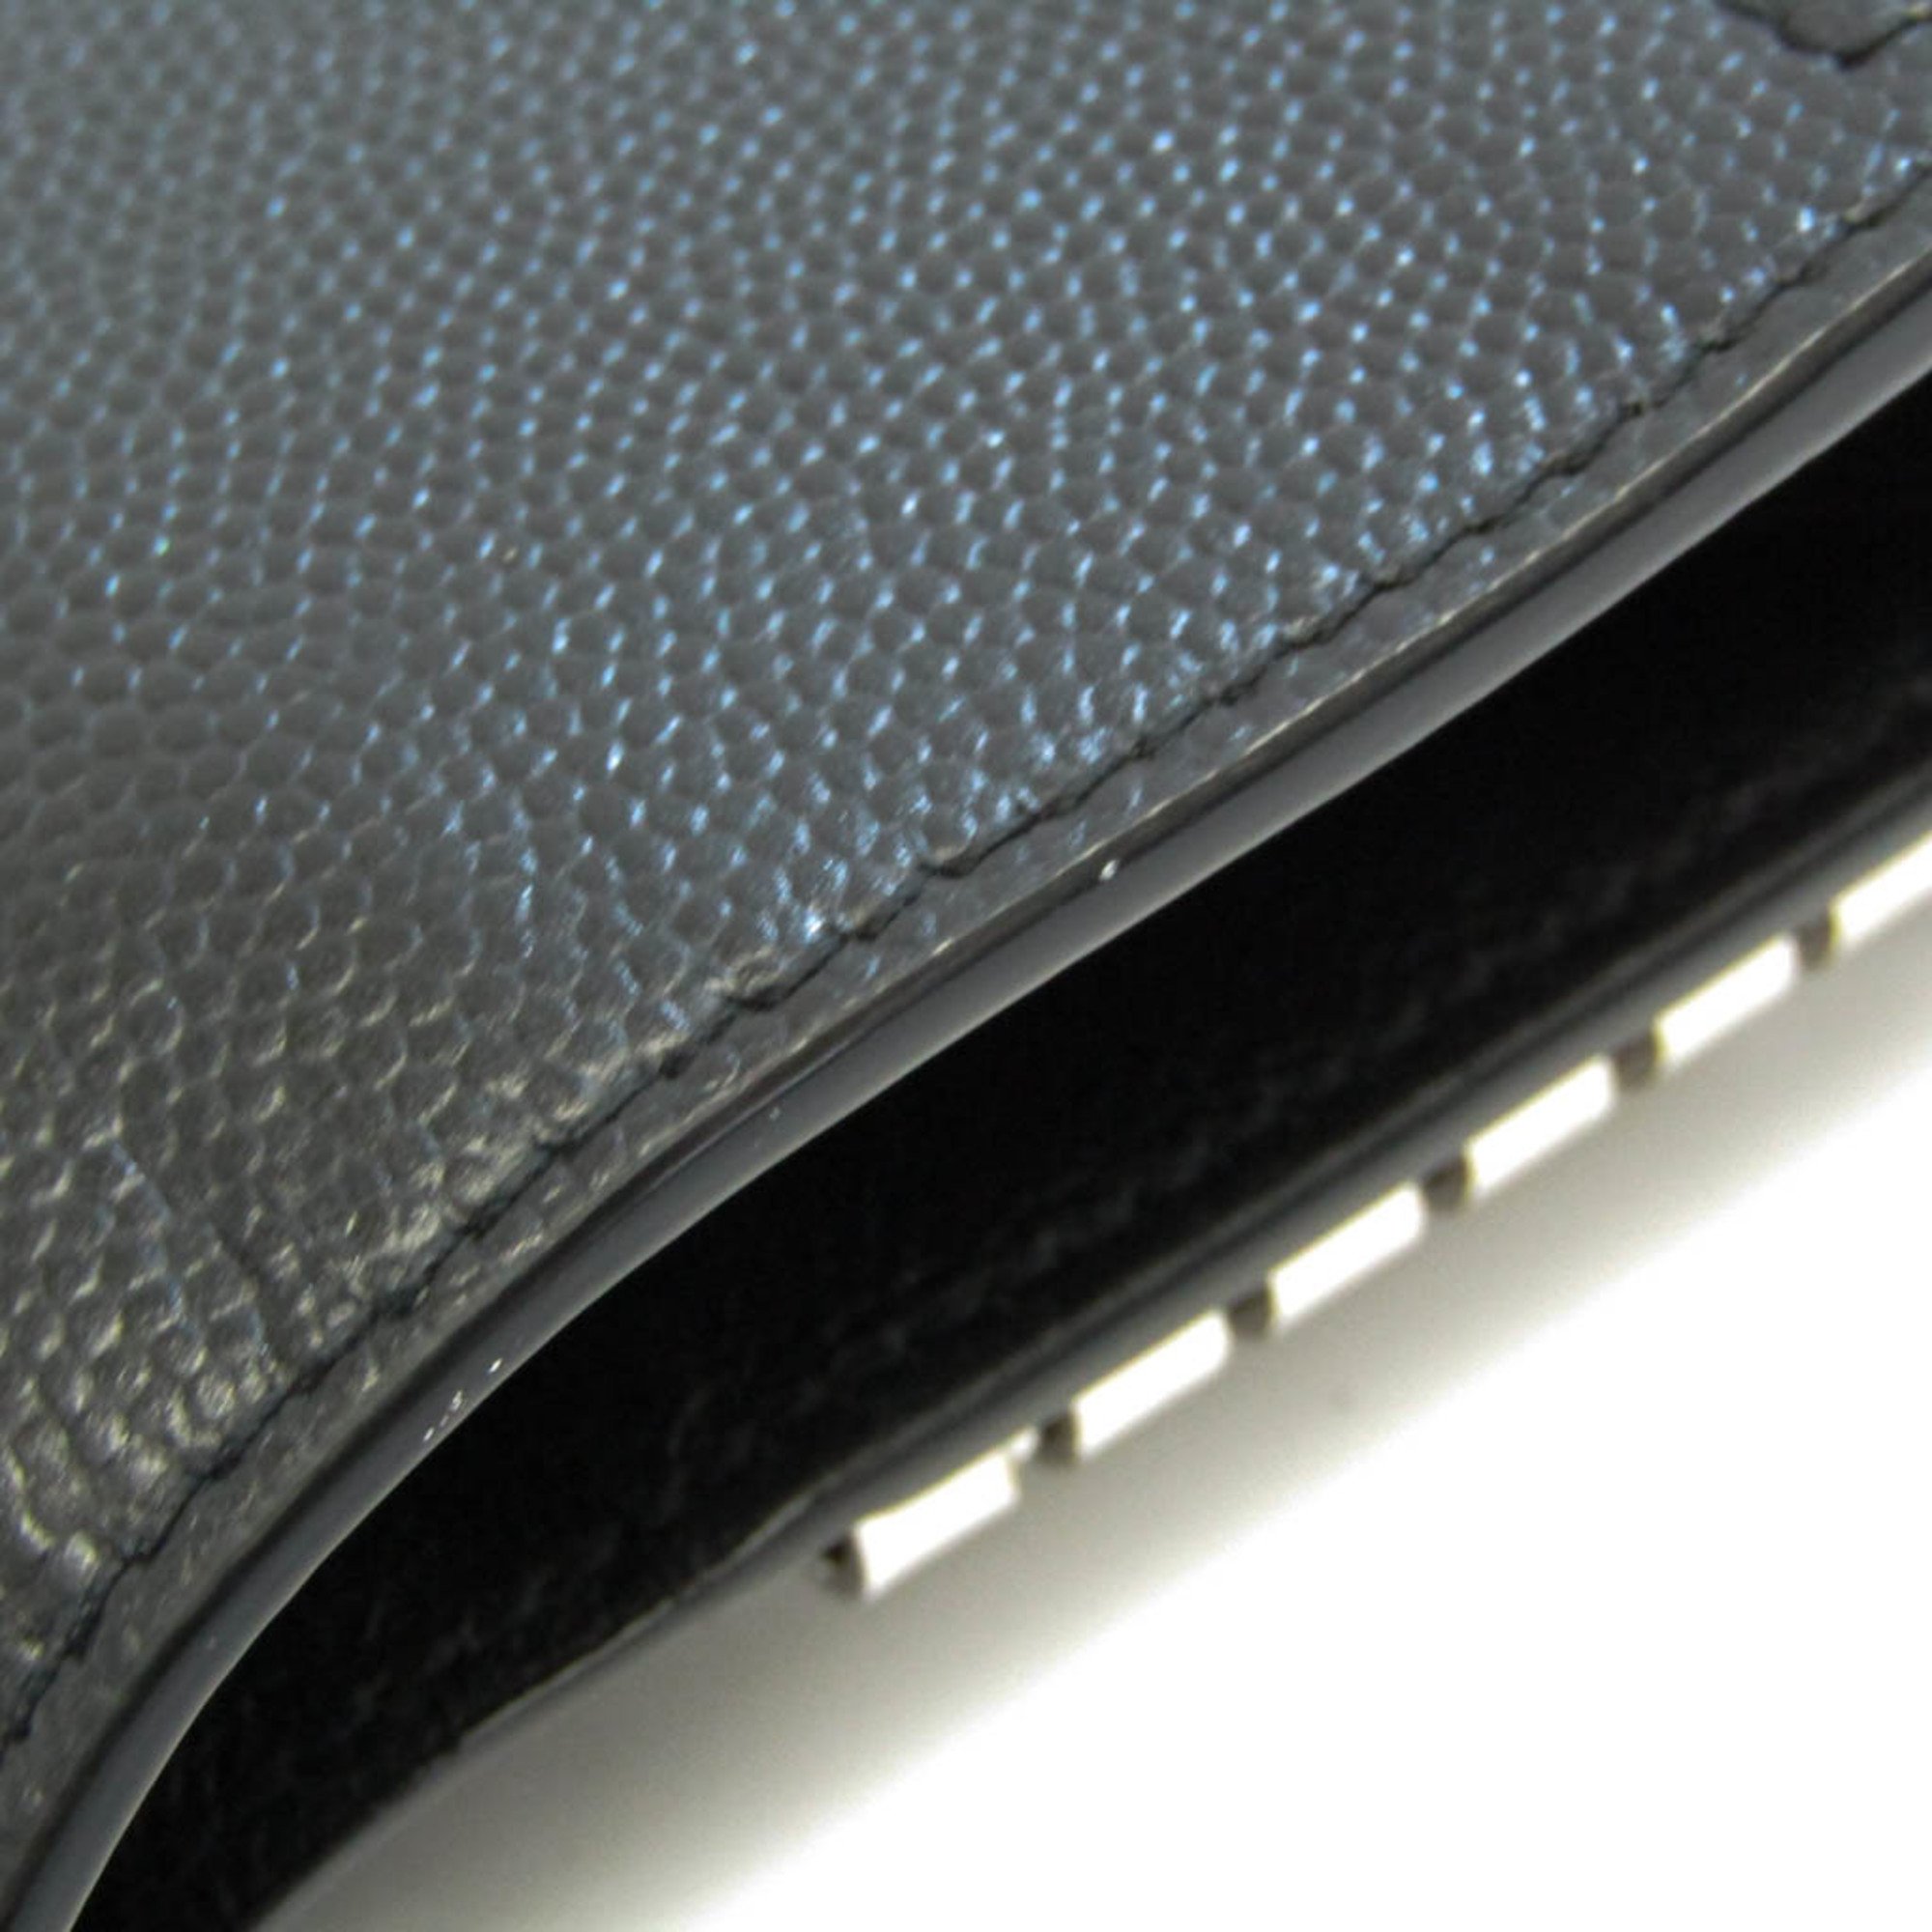 Saint Laurent Key Case 533719 Men,Women Leather Wallet (tri-fold) Black